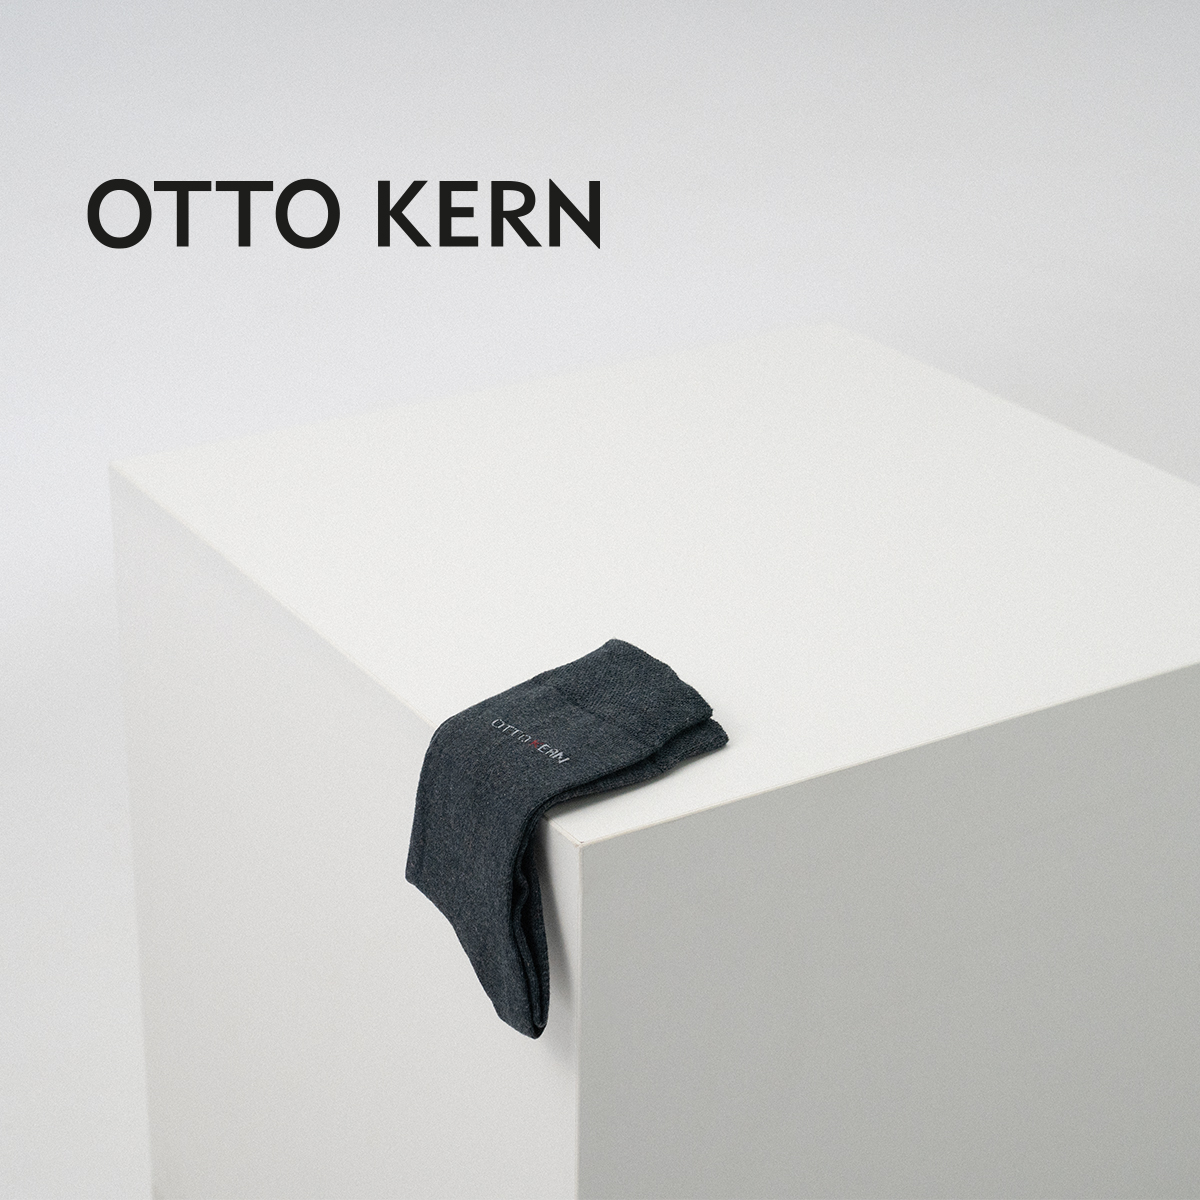 Otto Kern